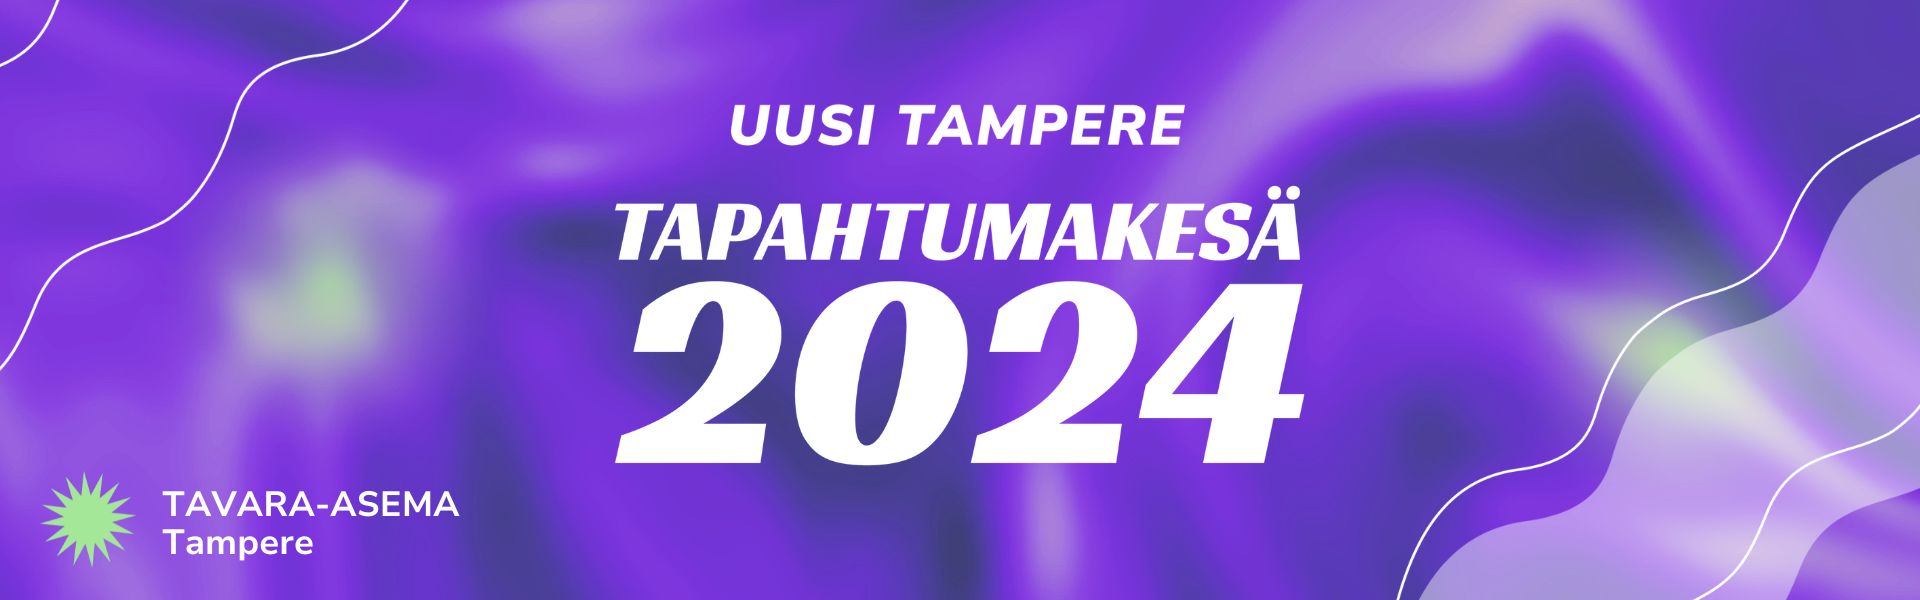 Uusi Tampere uudistuu – ainutlaatuinen tapahtumien sarja tuo Tavara-asemalle omaehtoisia artisteja koko kesän ajan!